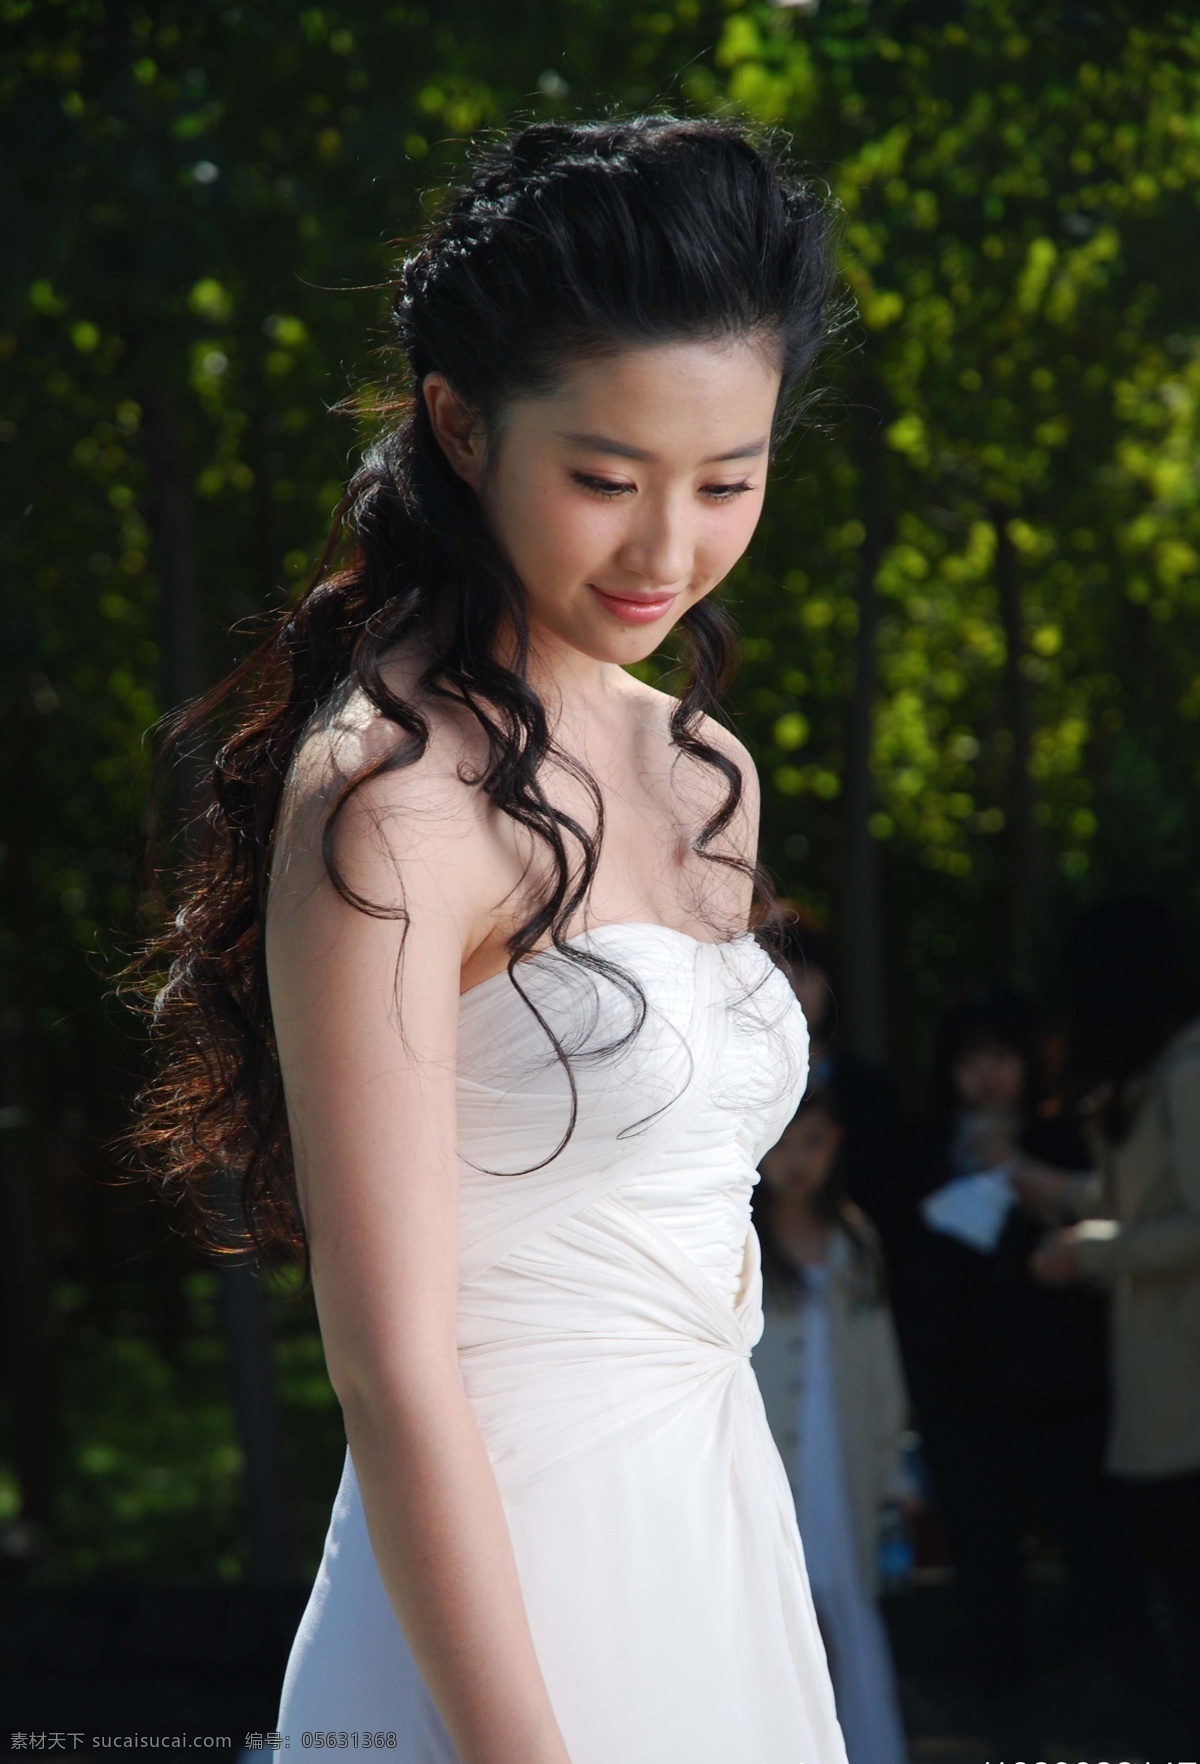 刘亦菲 阿尔山 造型 模特 气质 高雅 仙女 礼服 花絮 白衣 美女 女明星 美丽 清纯 明星偶像 人物图库